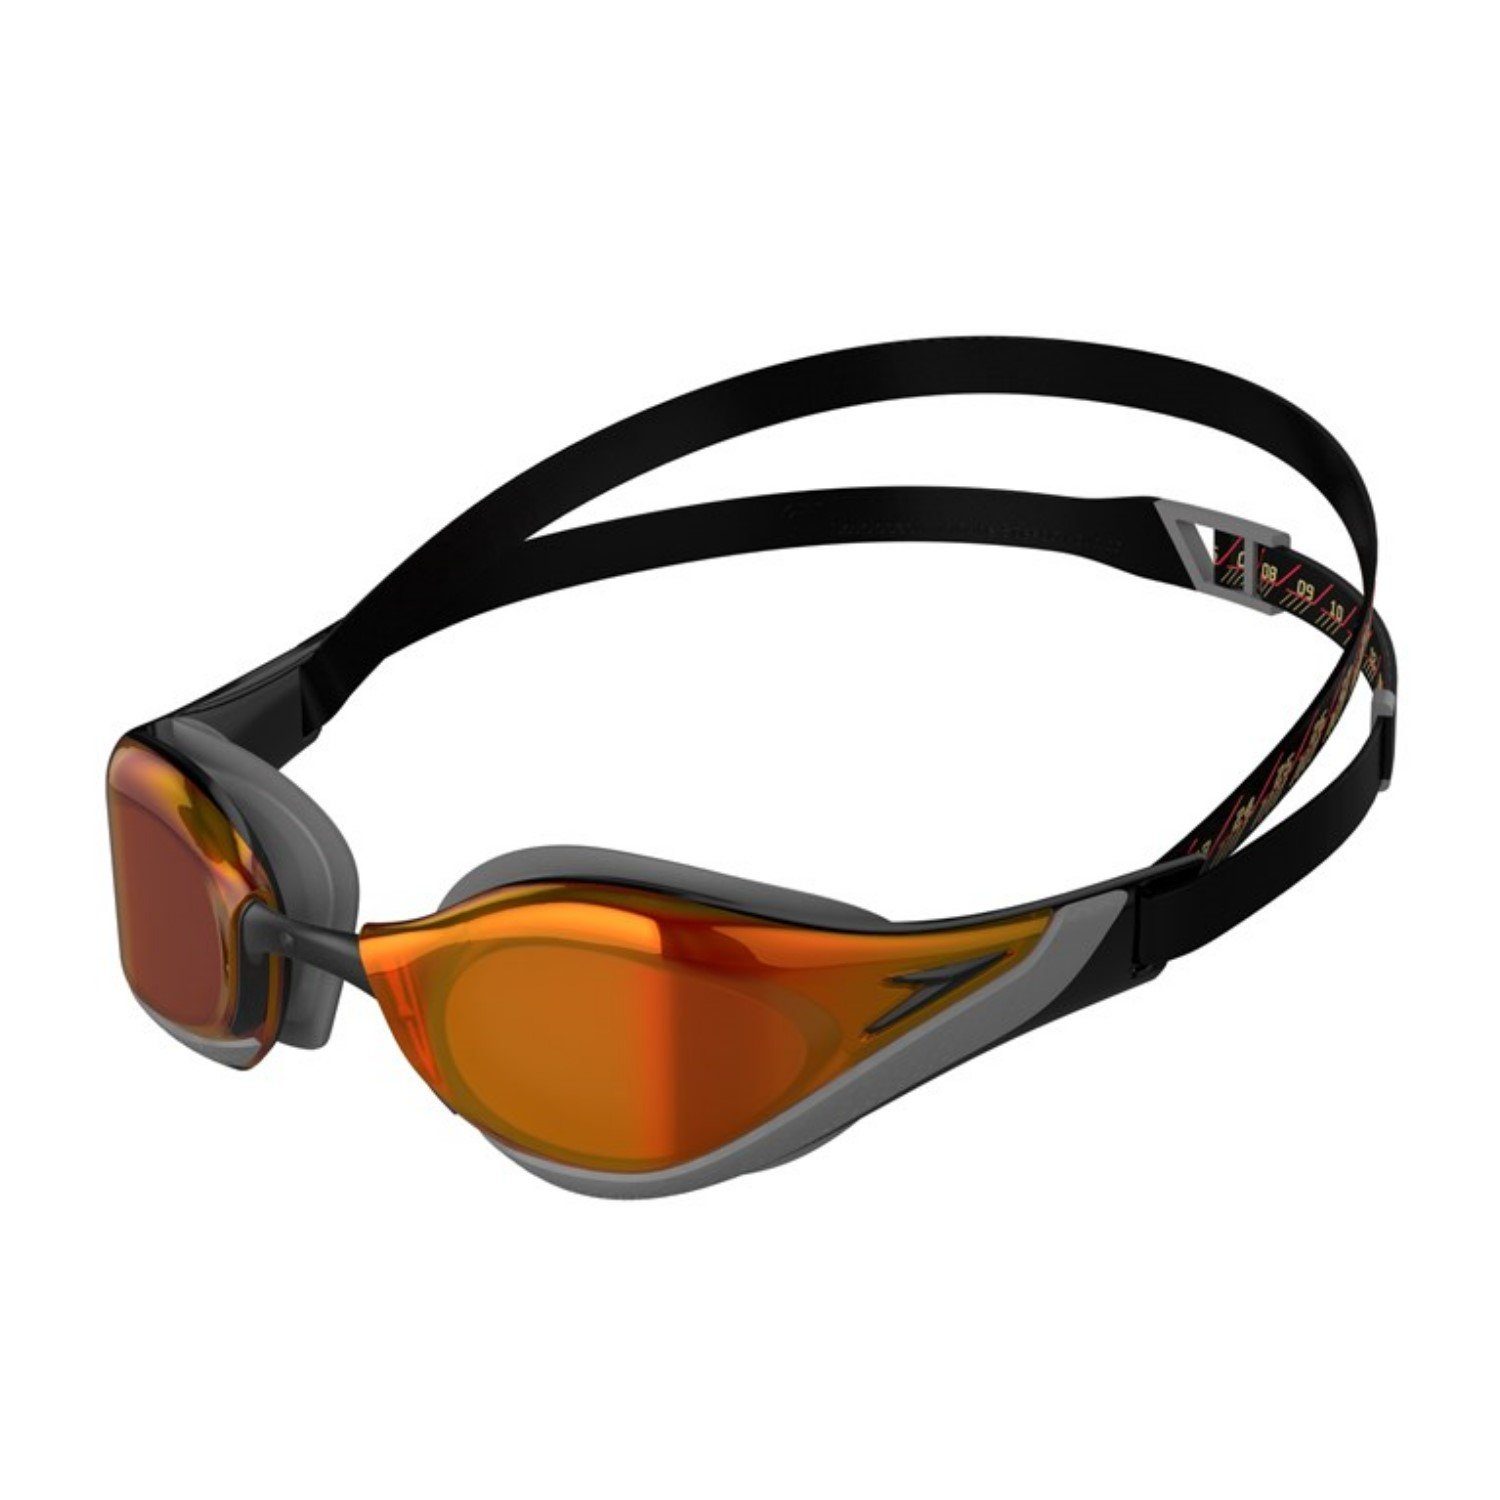 Speedo Sportbrille Schwimmbrille Fastskin Pure Focus Mirror für Erwachsene verspiegelt